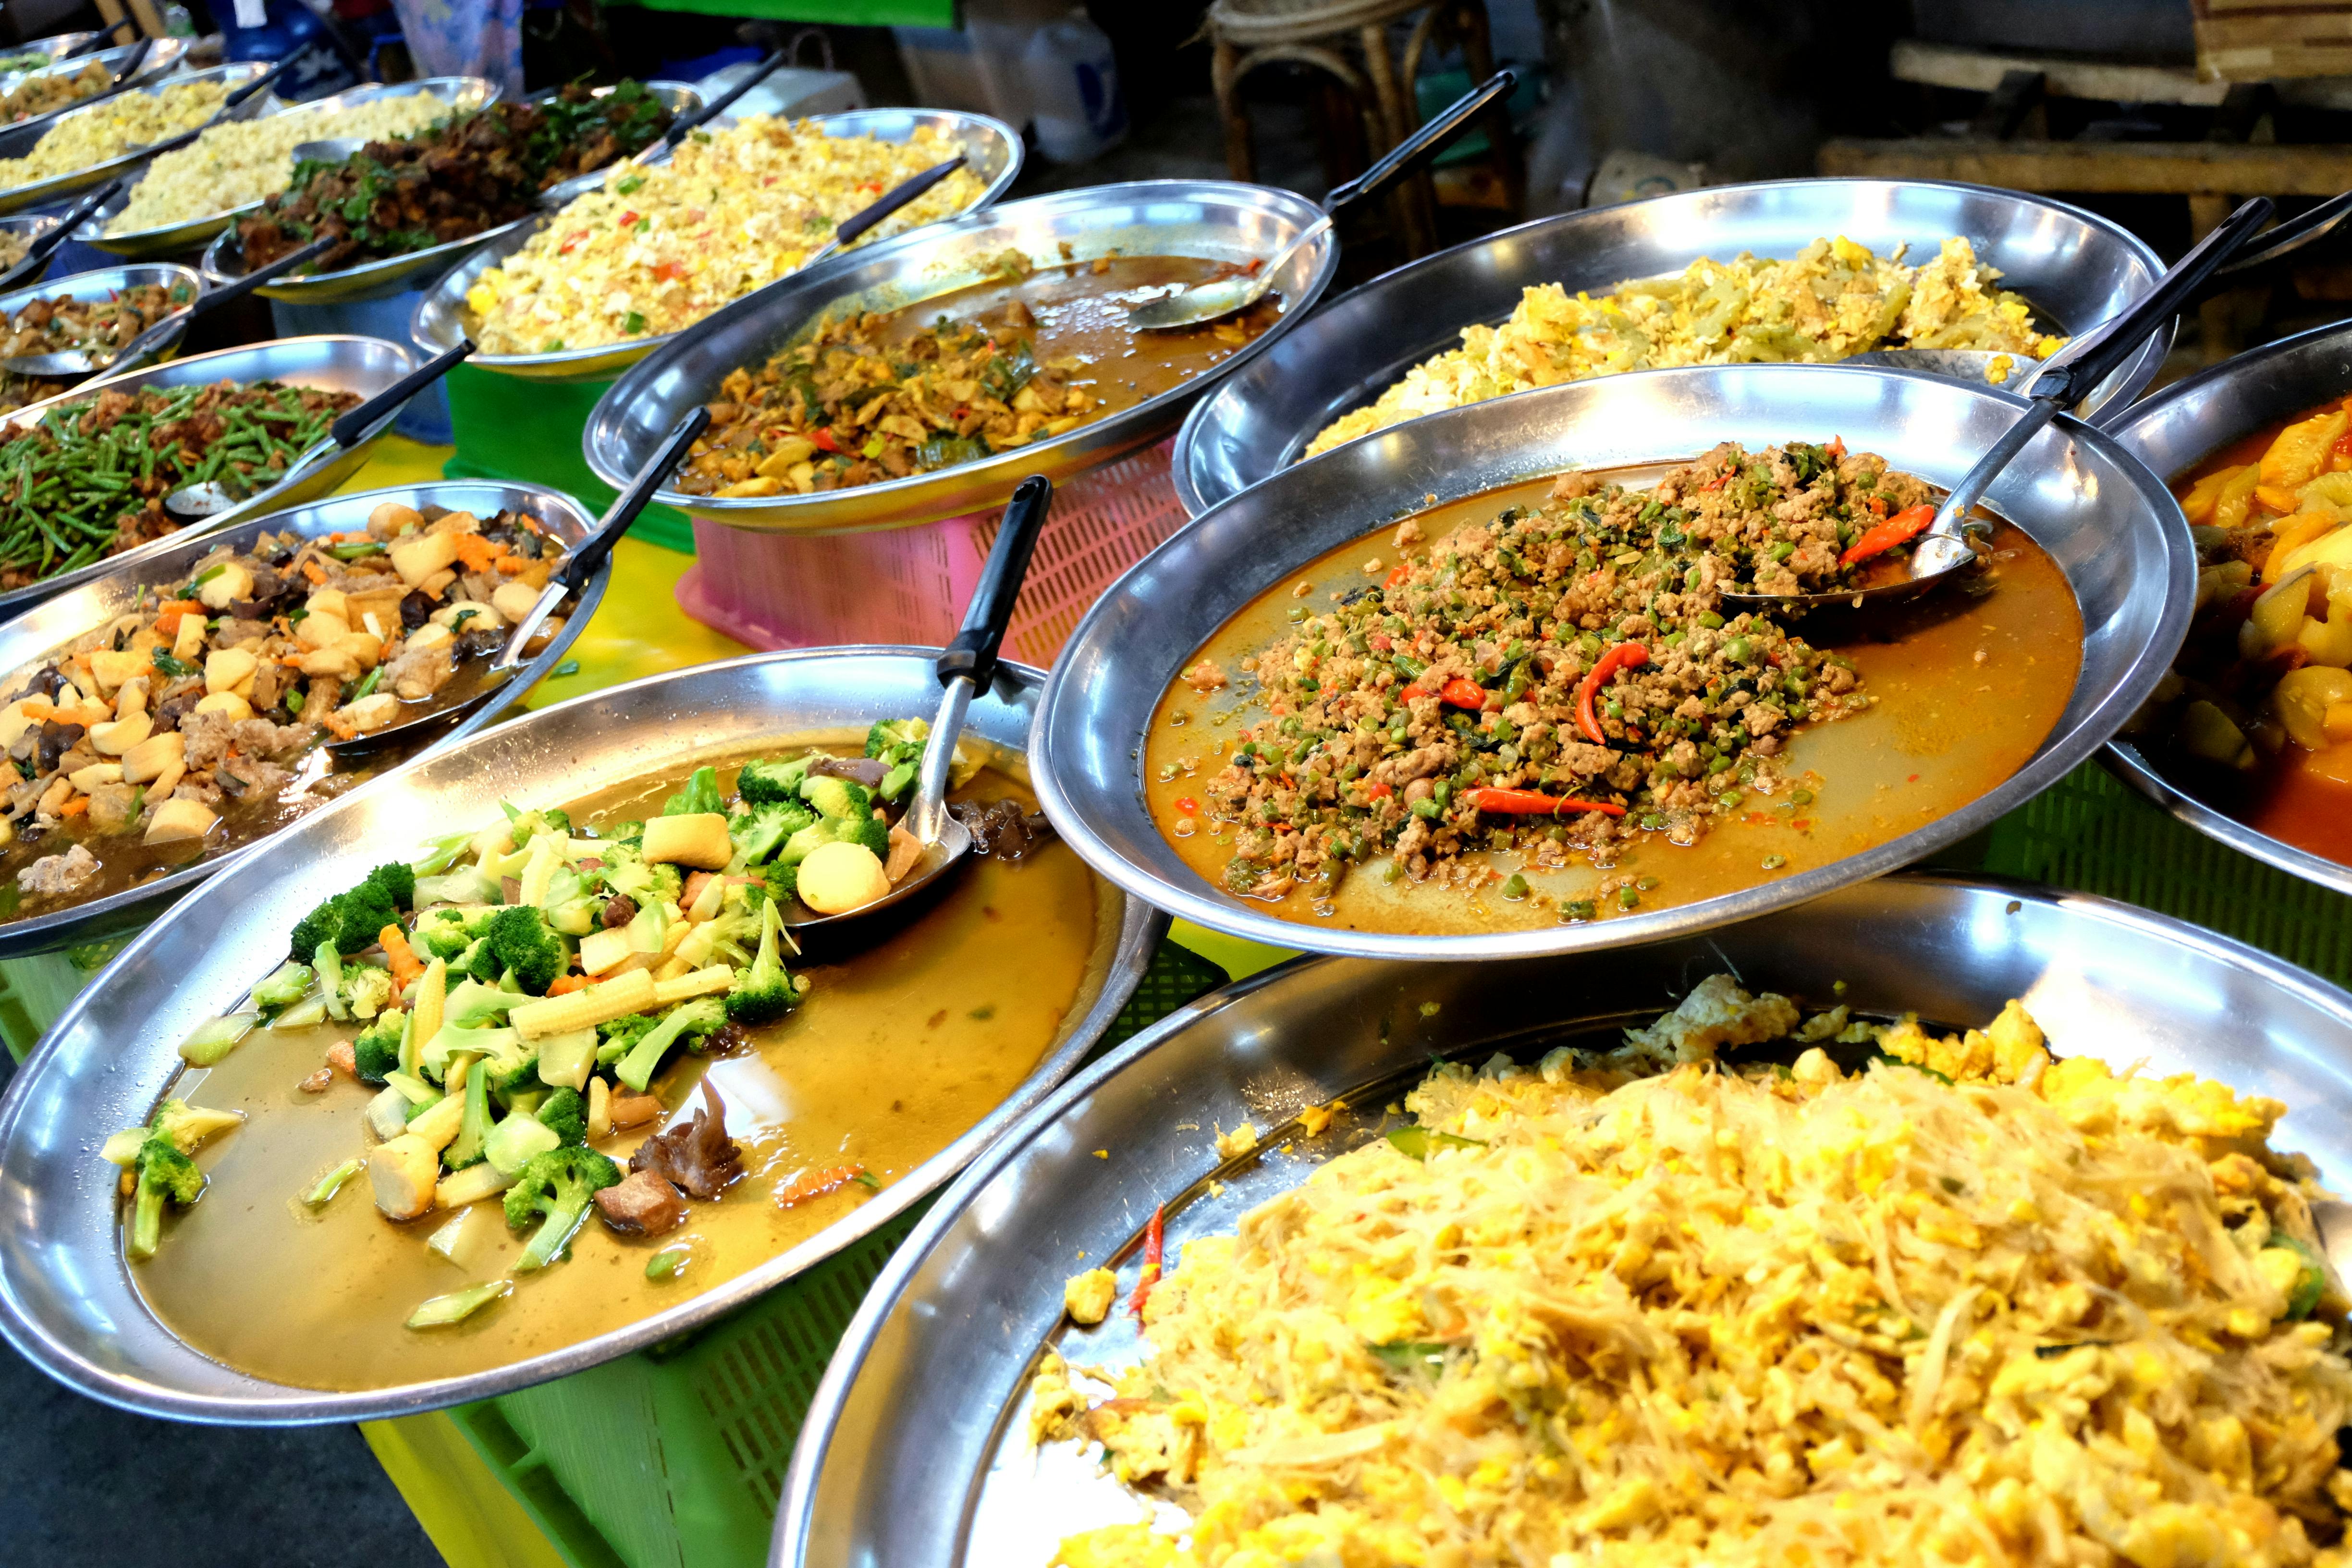 Kostenloses Foto zum Thema: asiatisches essen, markt, straßenessen